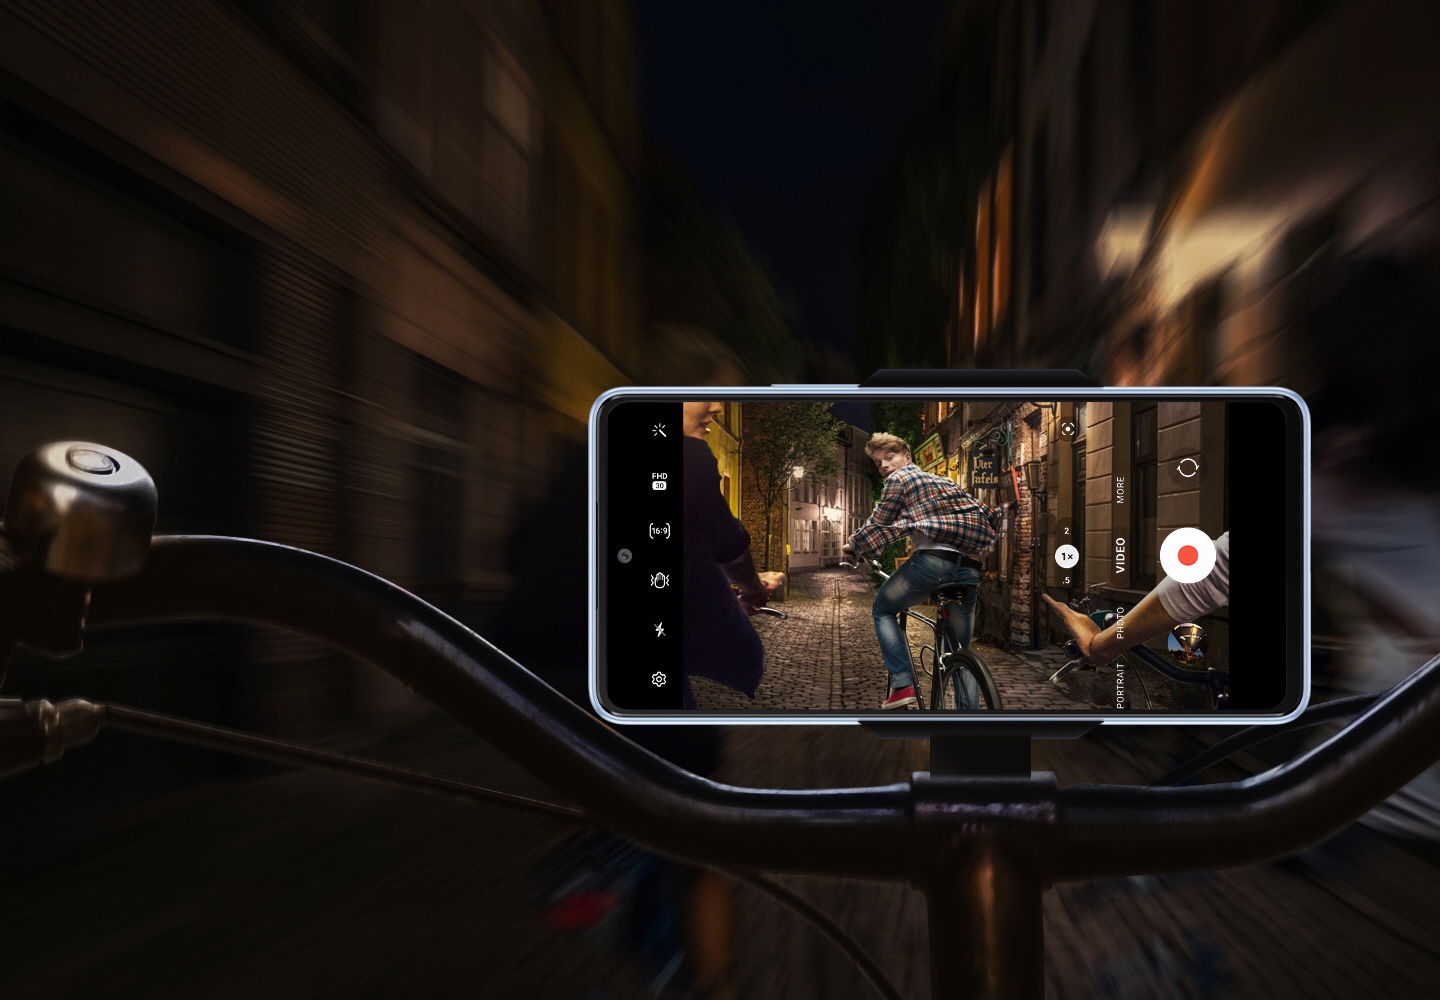 Una vista frontal de un Galaxy A53 5G colocado horizontalmente en el manubrio de una bicicleta. Si bien el fondo es borroso y oscuro, la pantalla del teléfono inteligente muestra que está grabando de manera clara y estable lo que está sucediendo: un grupo de ciclistas circula por una carretera poco iluminada de noche, con el ciclista más adelantado mirando hacia el smartphone. 